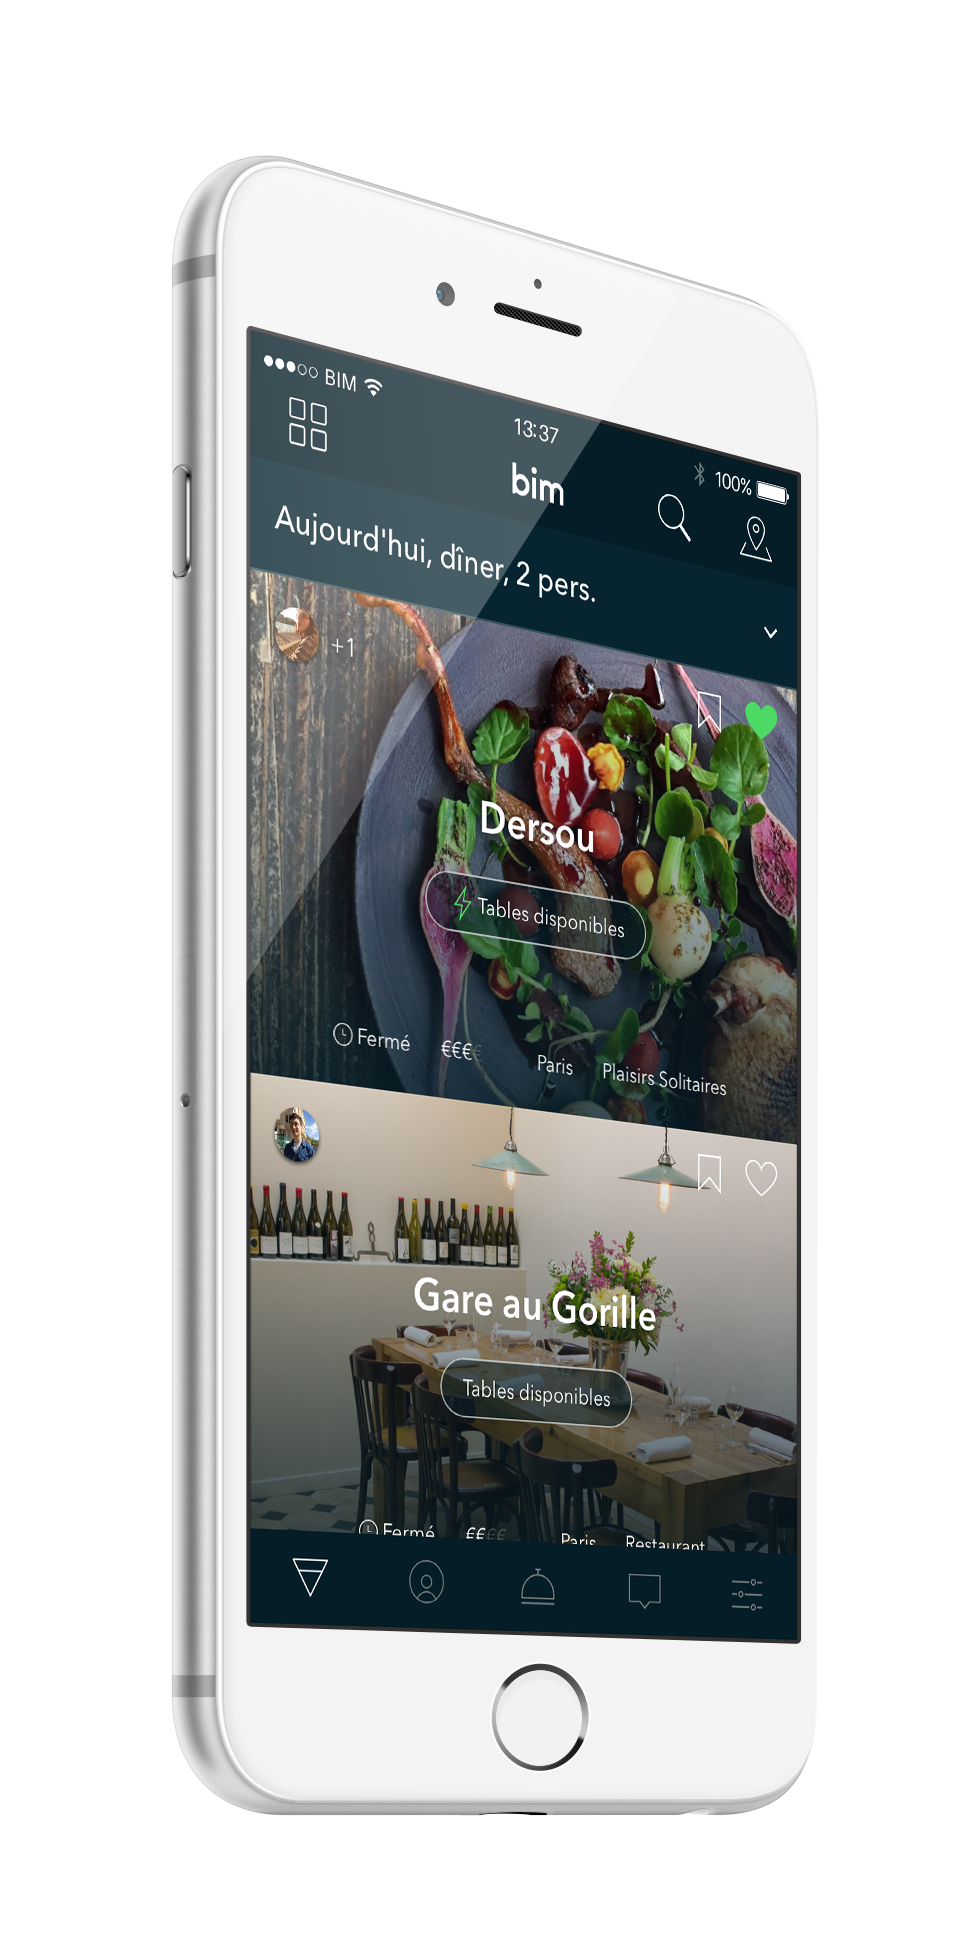 Réserver un restaurant sur iPhone